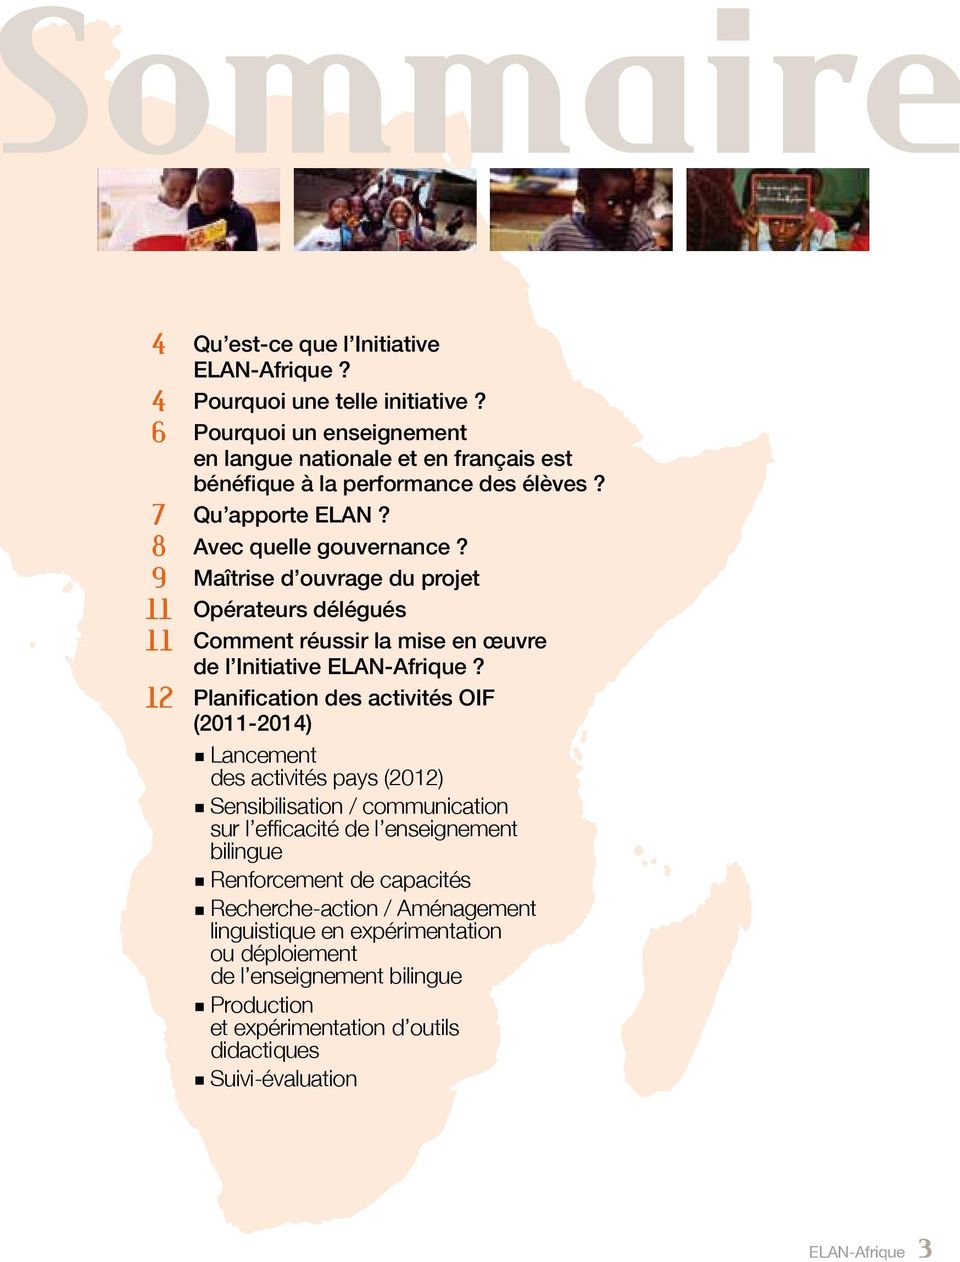 9 Maîtrise d ouvrage du projet 11 Opérateurs délégués 11 Comment réussir la mise en œuvre de l Initiative ELAN-Afrique?